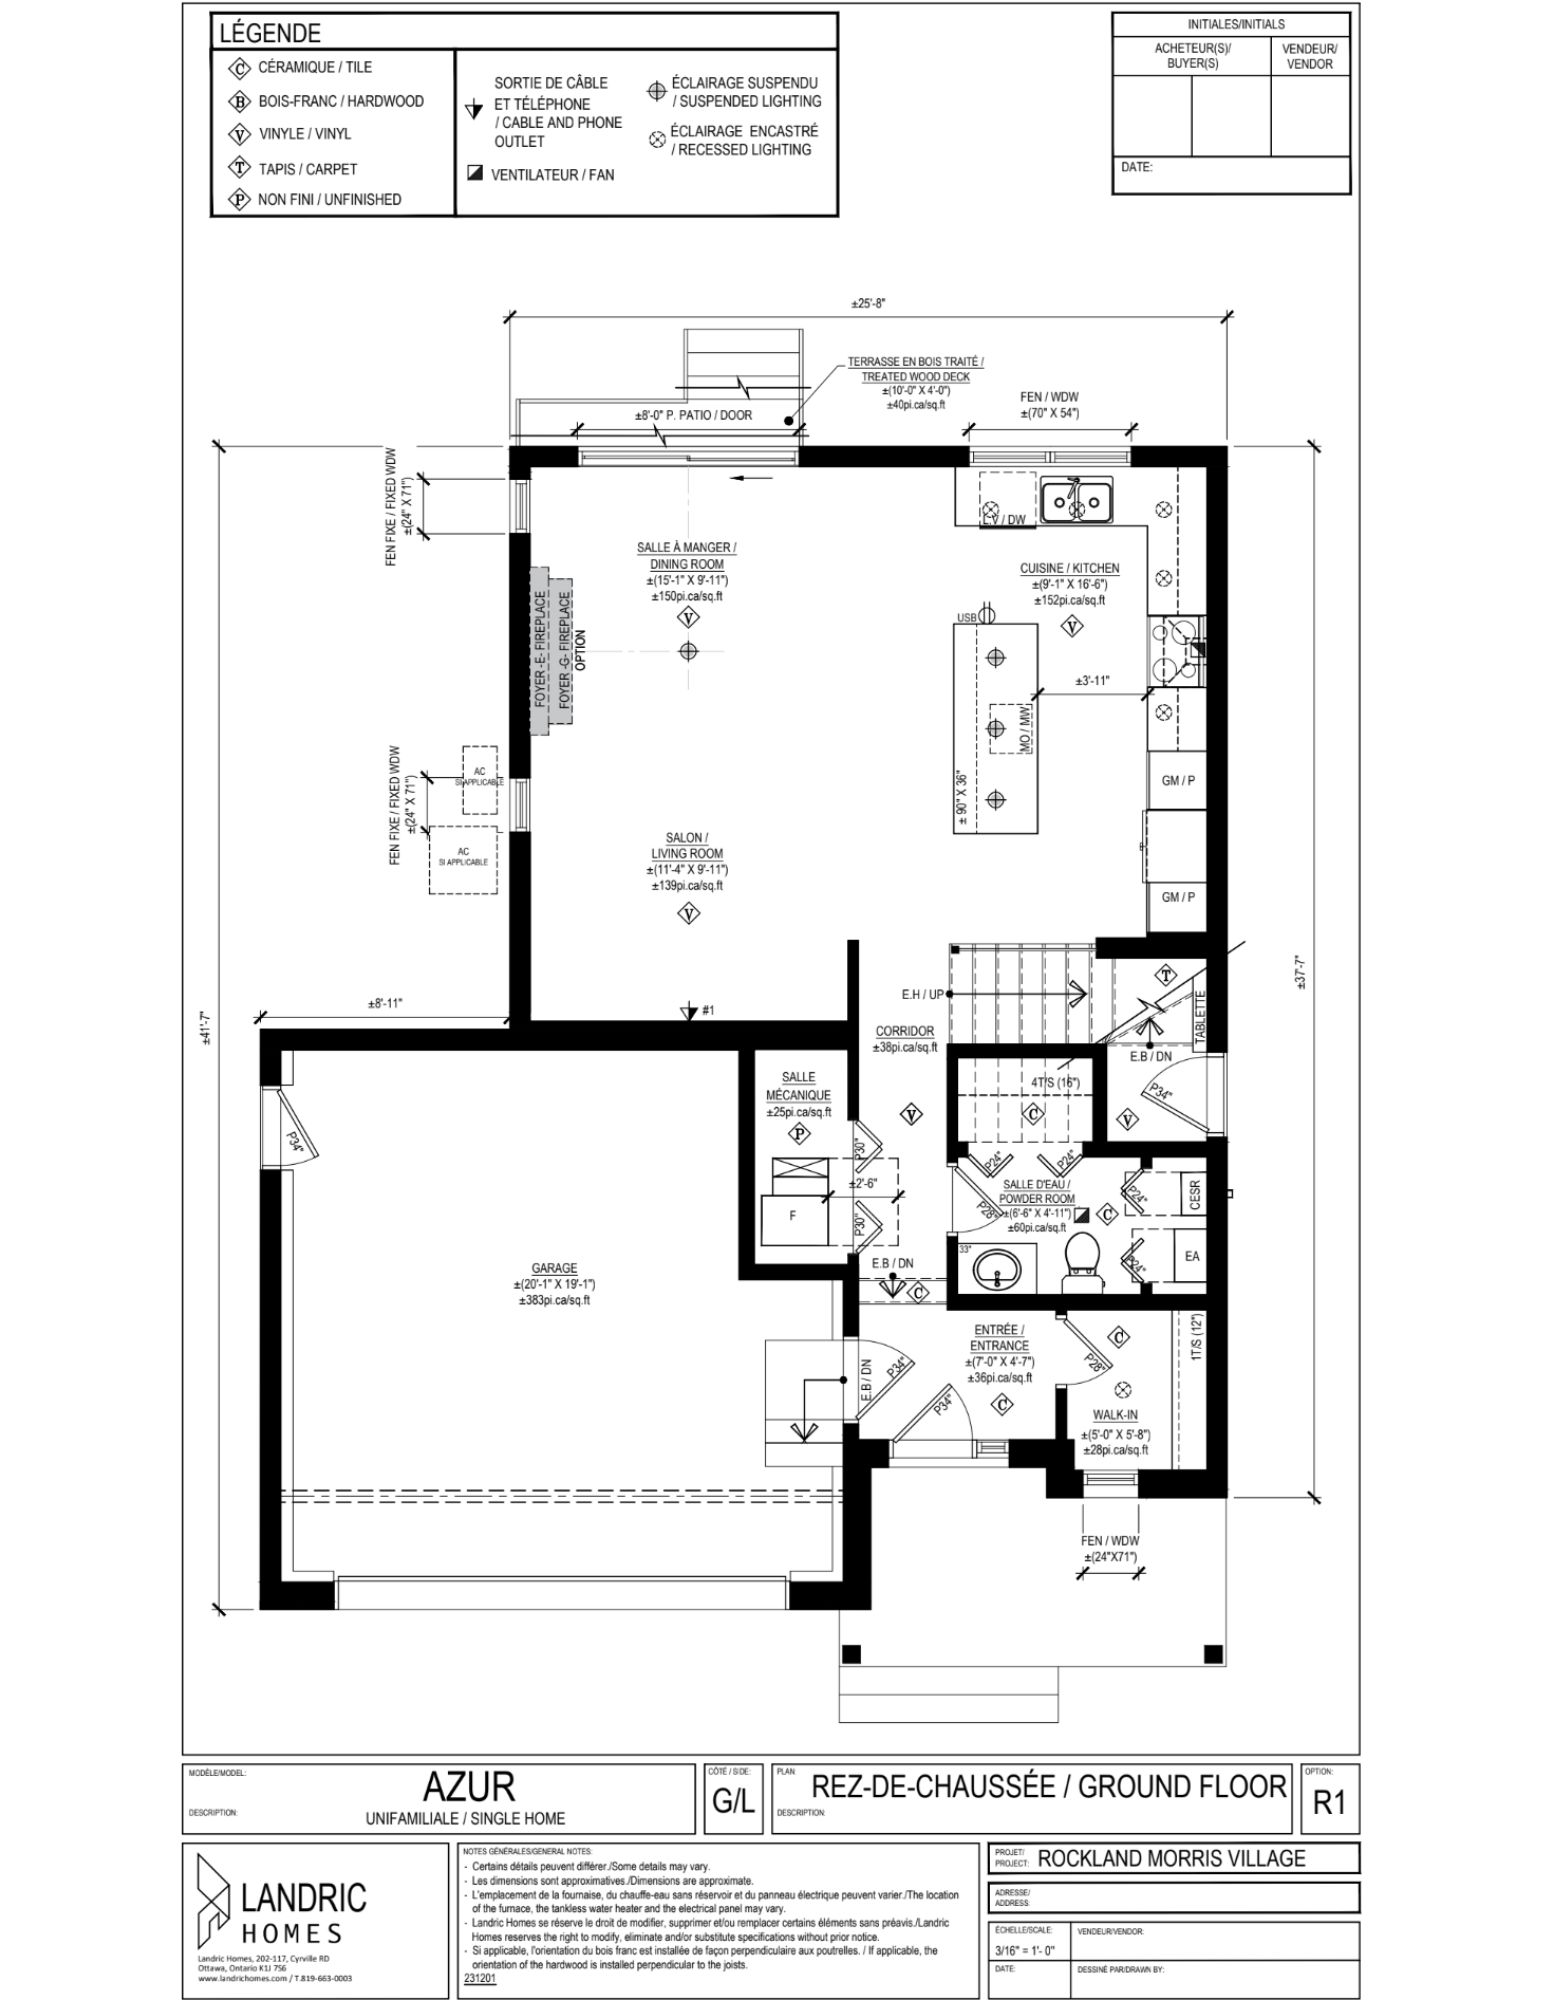 Beaumont, Morris Village floor plans (29)